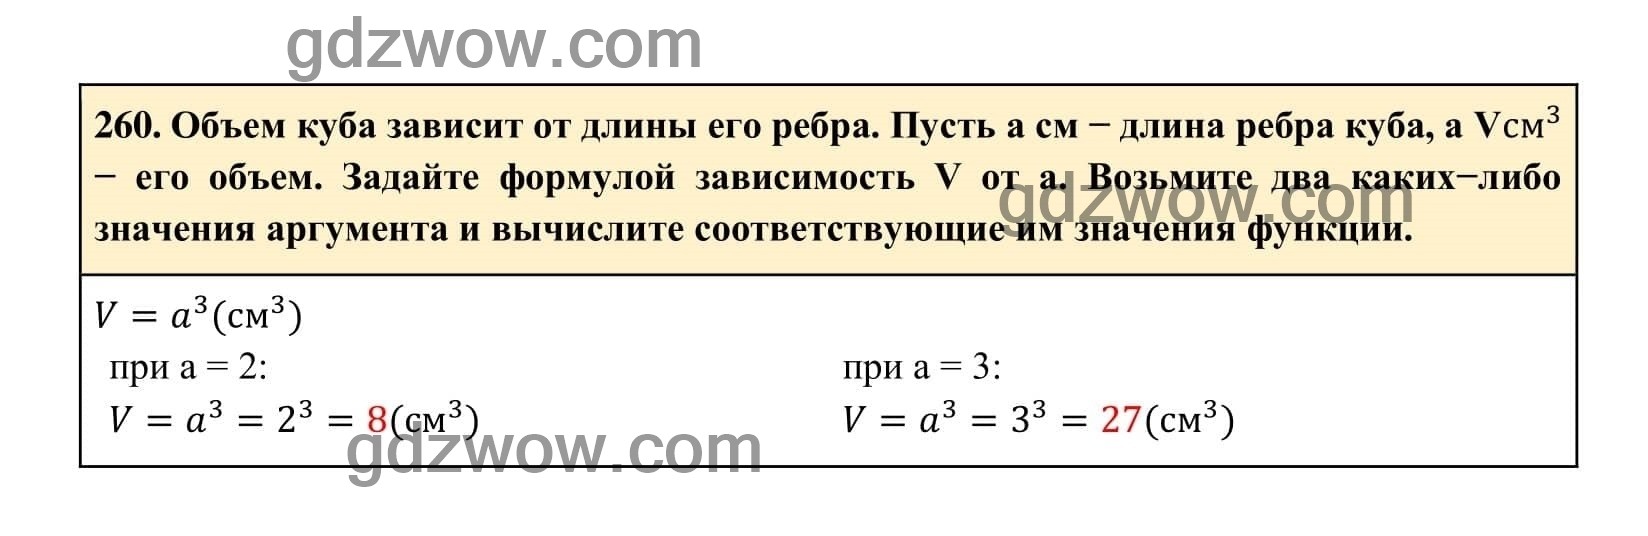 Упражнение 260 - ГДЗ по Алгебре 7 класс Учебник Макарычев (решебник) - GDZwow